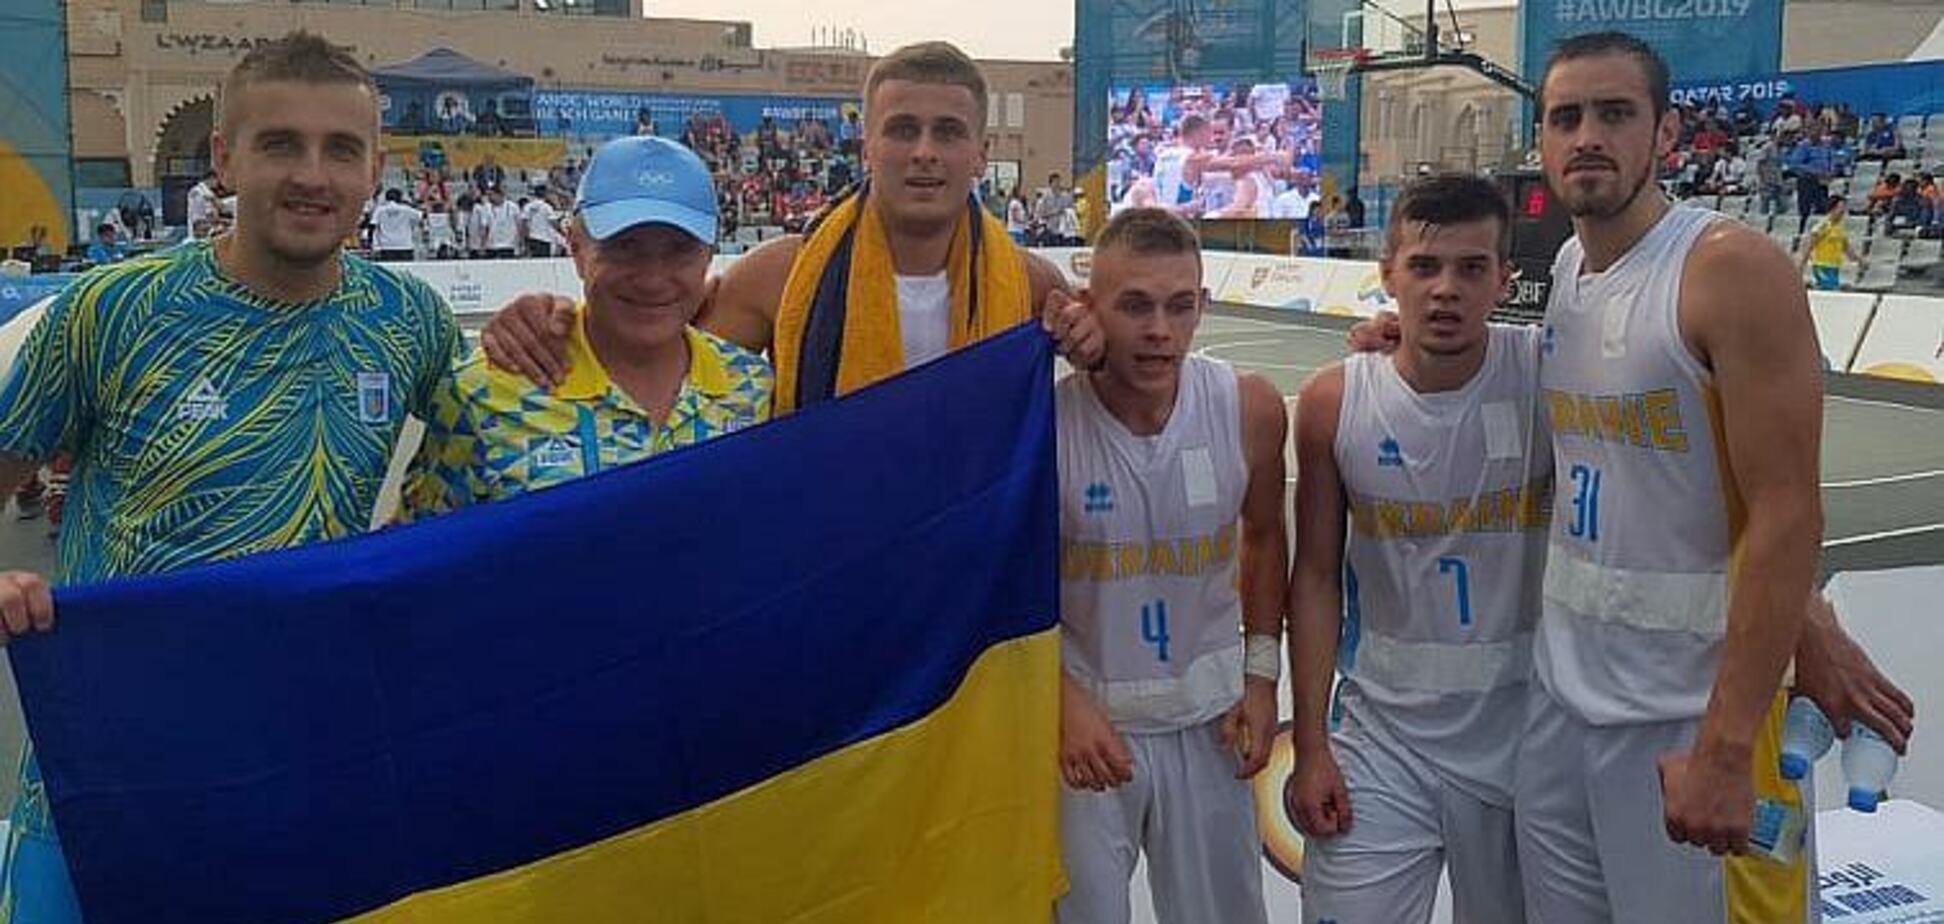 Збірна України з баскетболу 3х3 драматично вийшла в півфінал Пляжних ігор